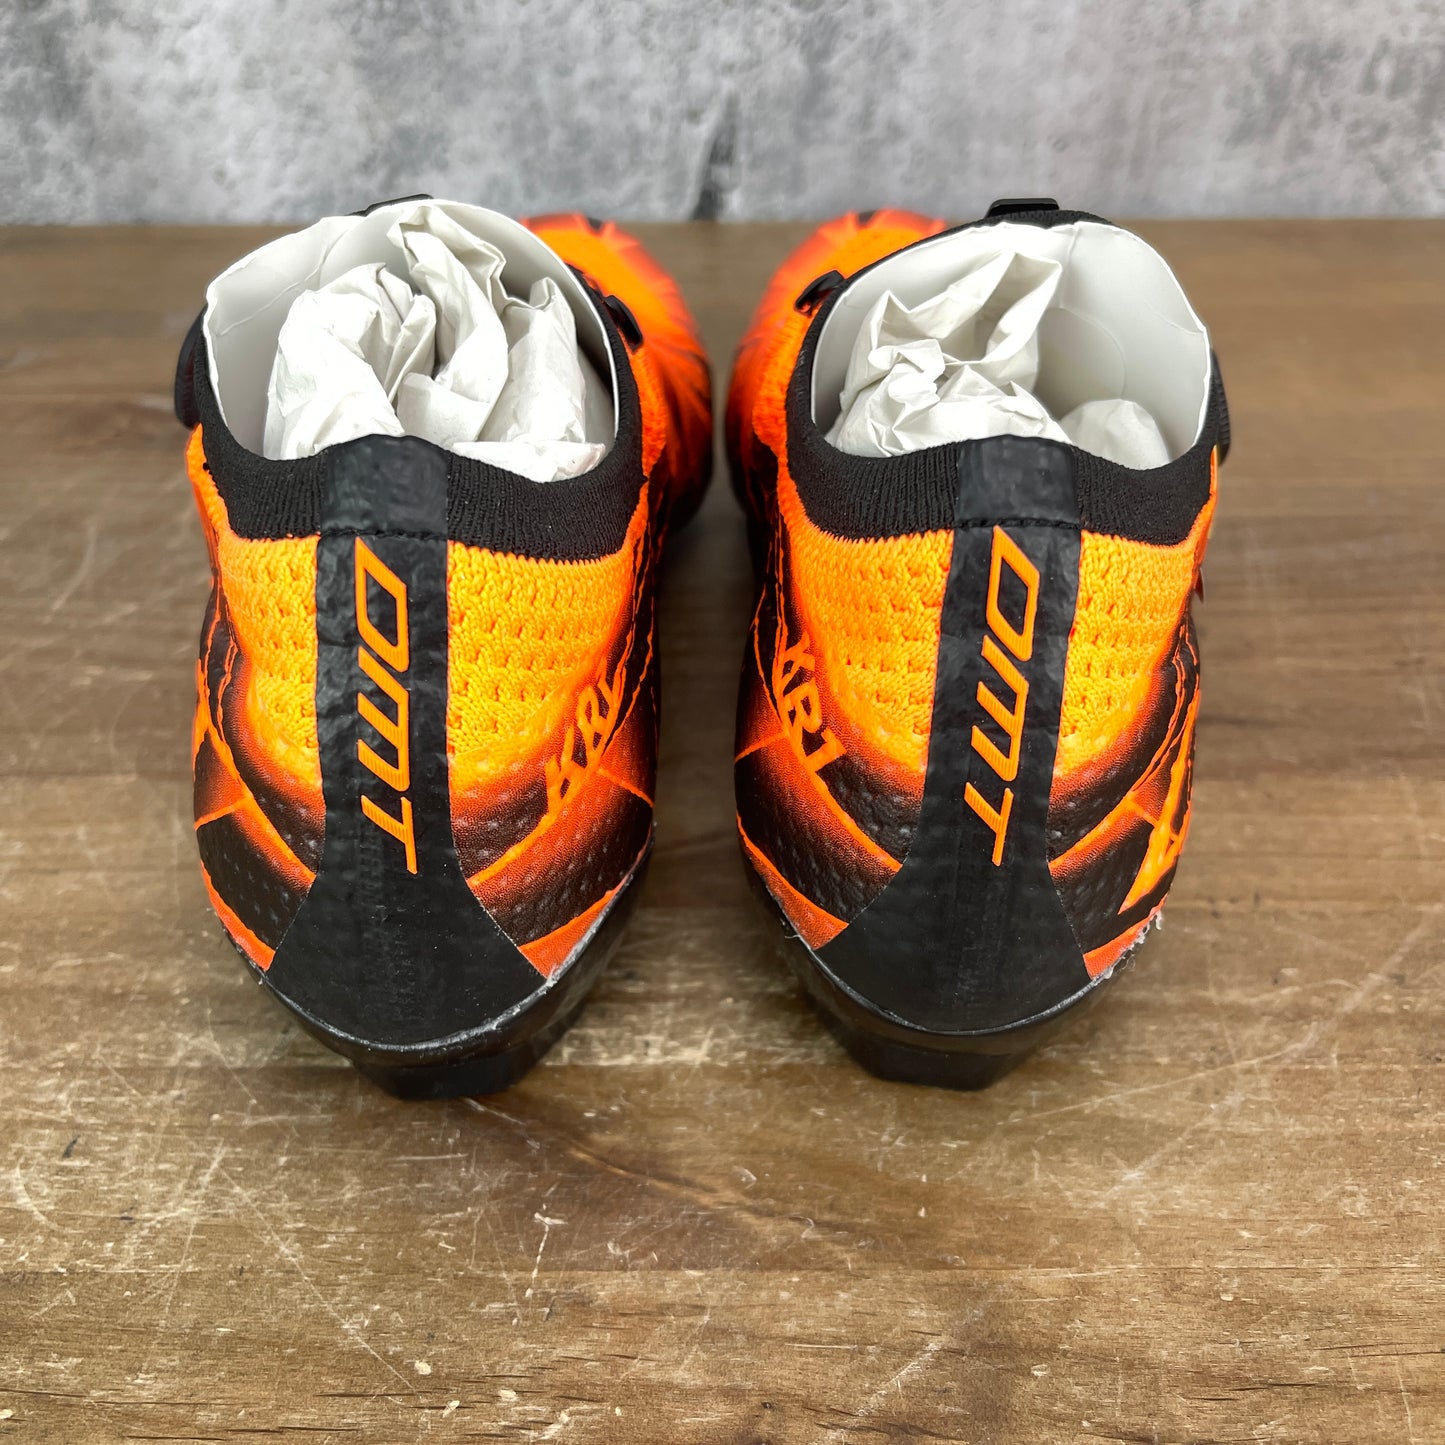 New! DMT KR1 42.5 (EU) 9 (US) Carbon Road Cycling Shoes 3-Bolt Black/Orange